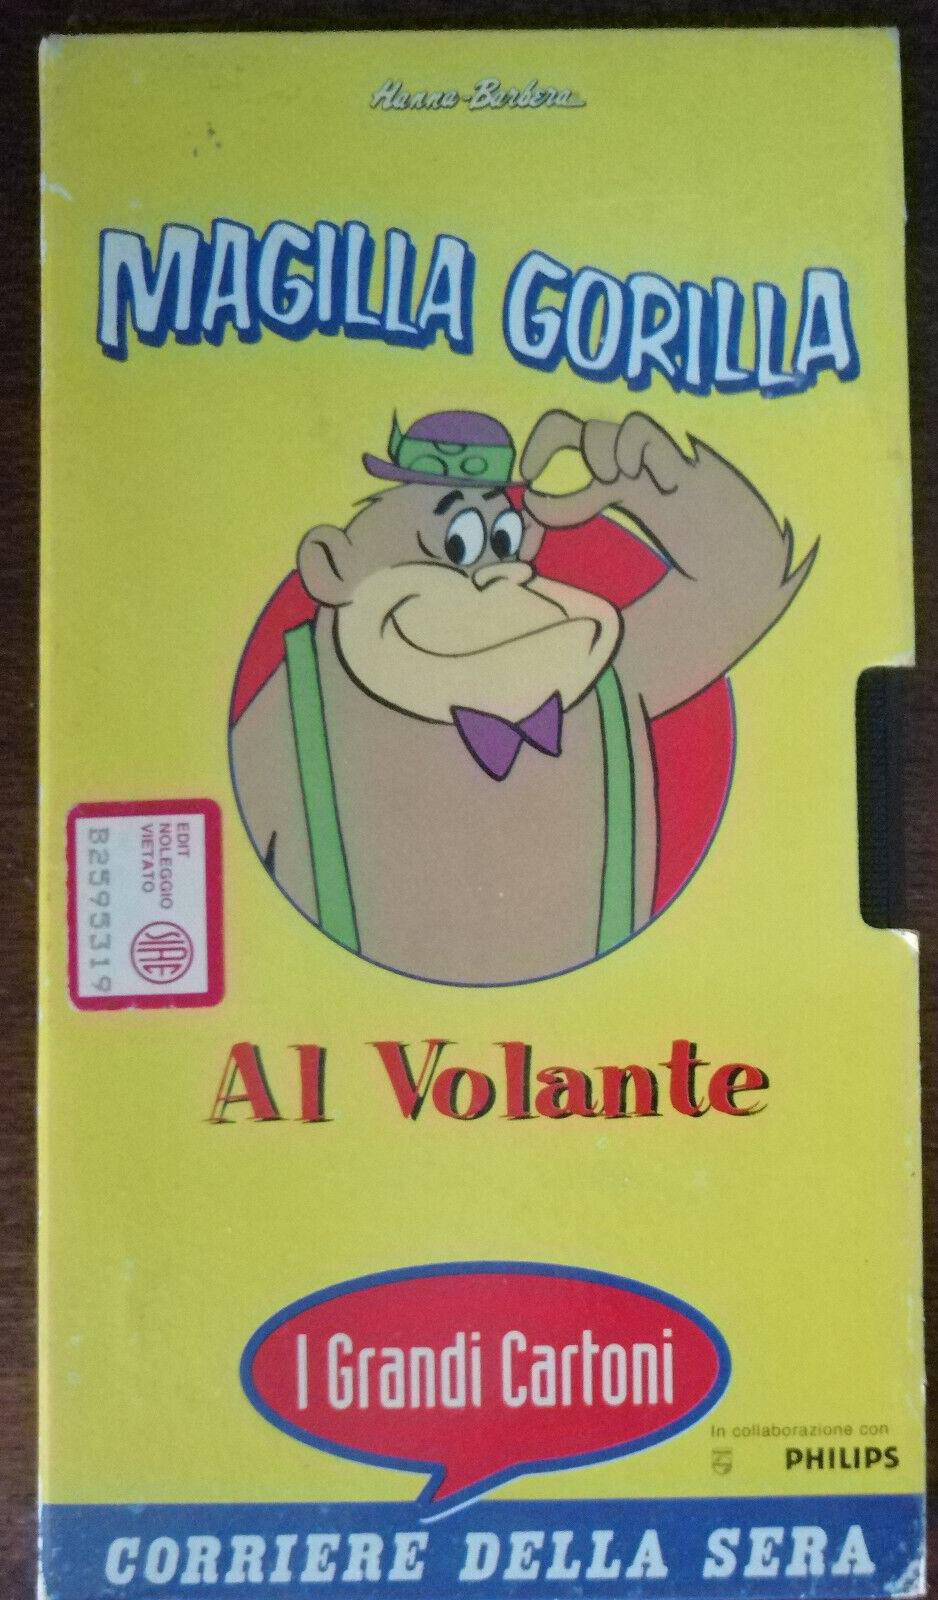 Magilla Gorilla al volante - Corriere della sera - VHS - A